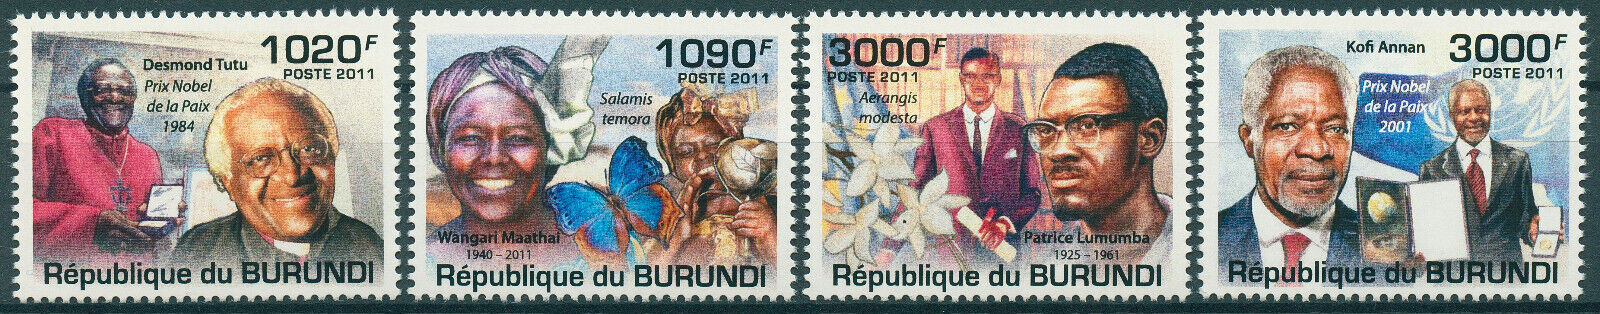 Burundi 2011 MNH Famous People Stamps Kofi Annan Desmund Tutu Lumumba 4v Set